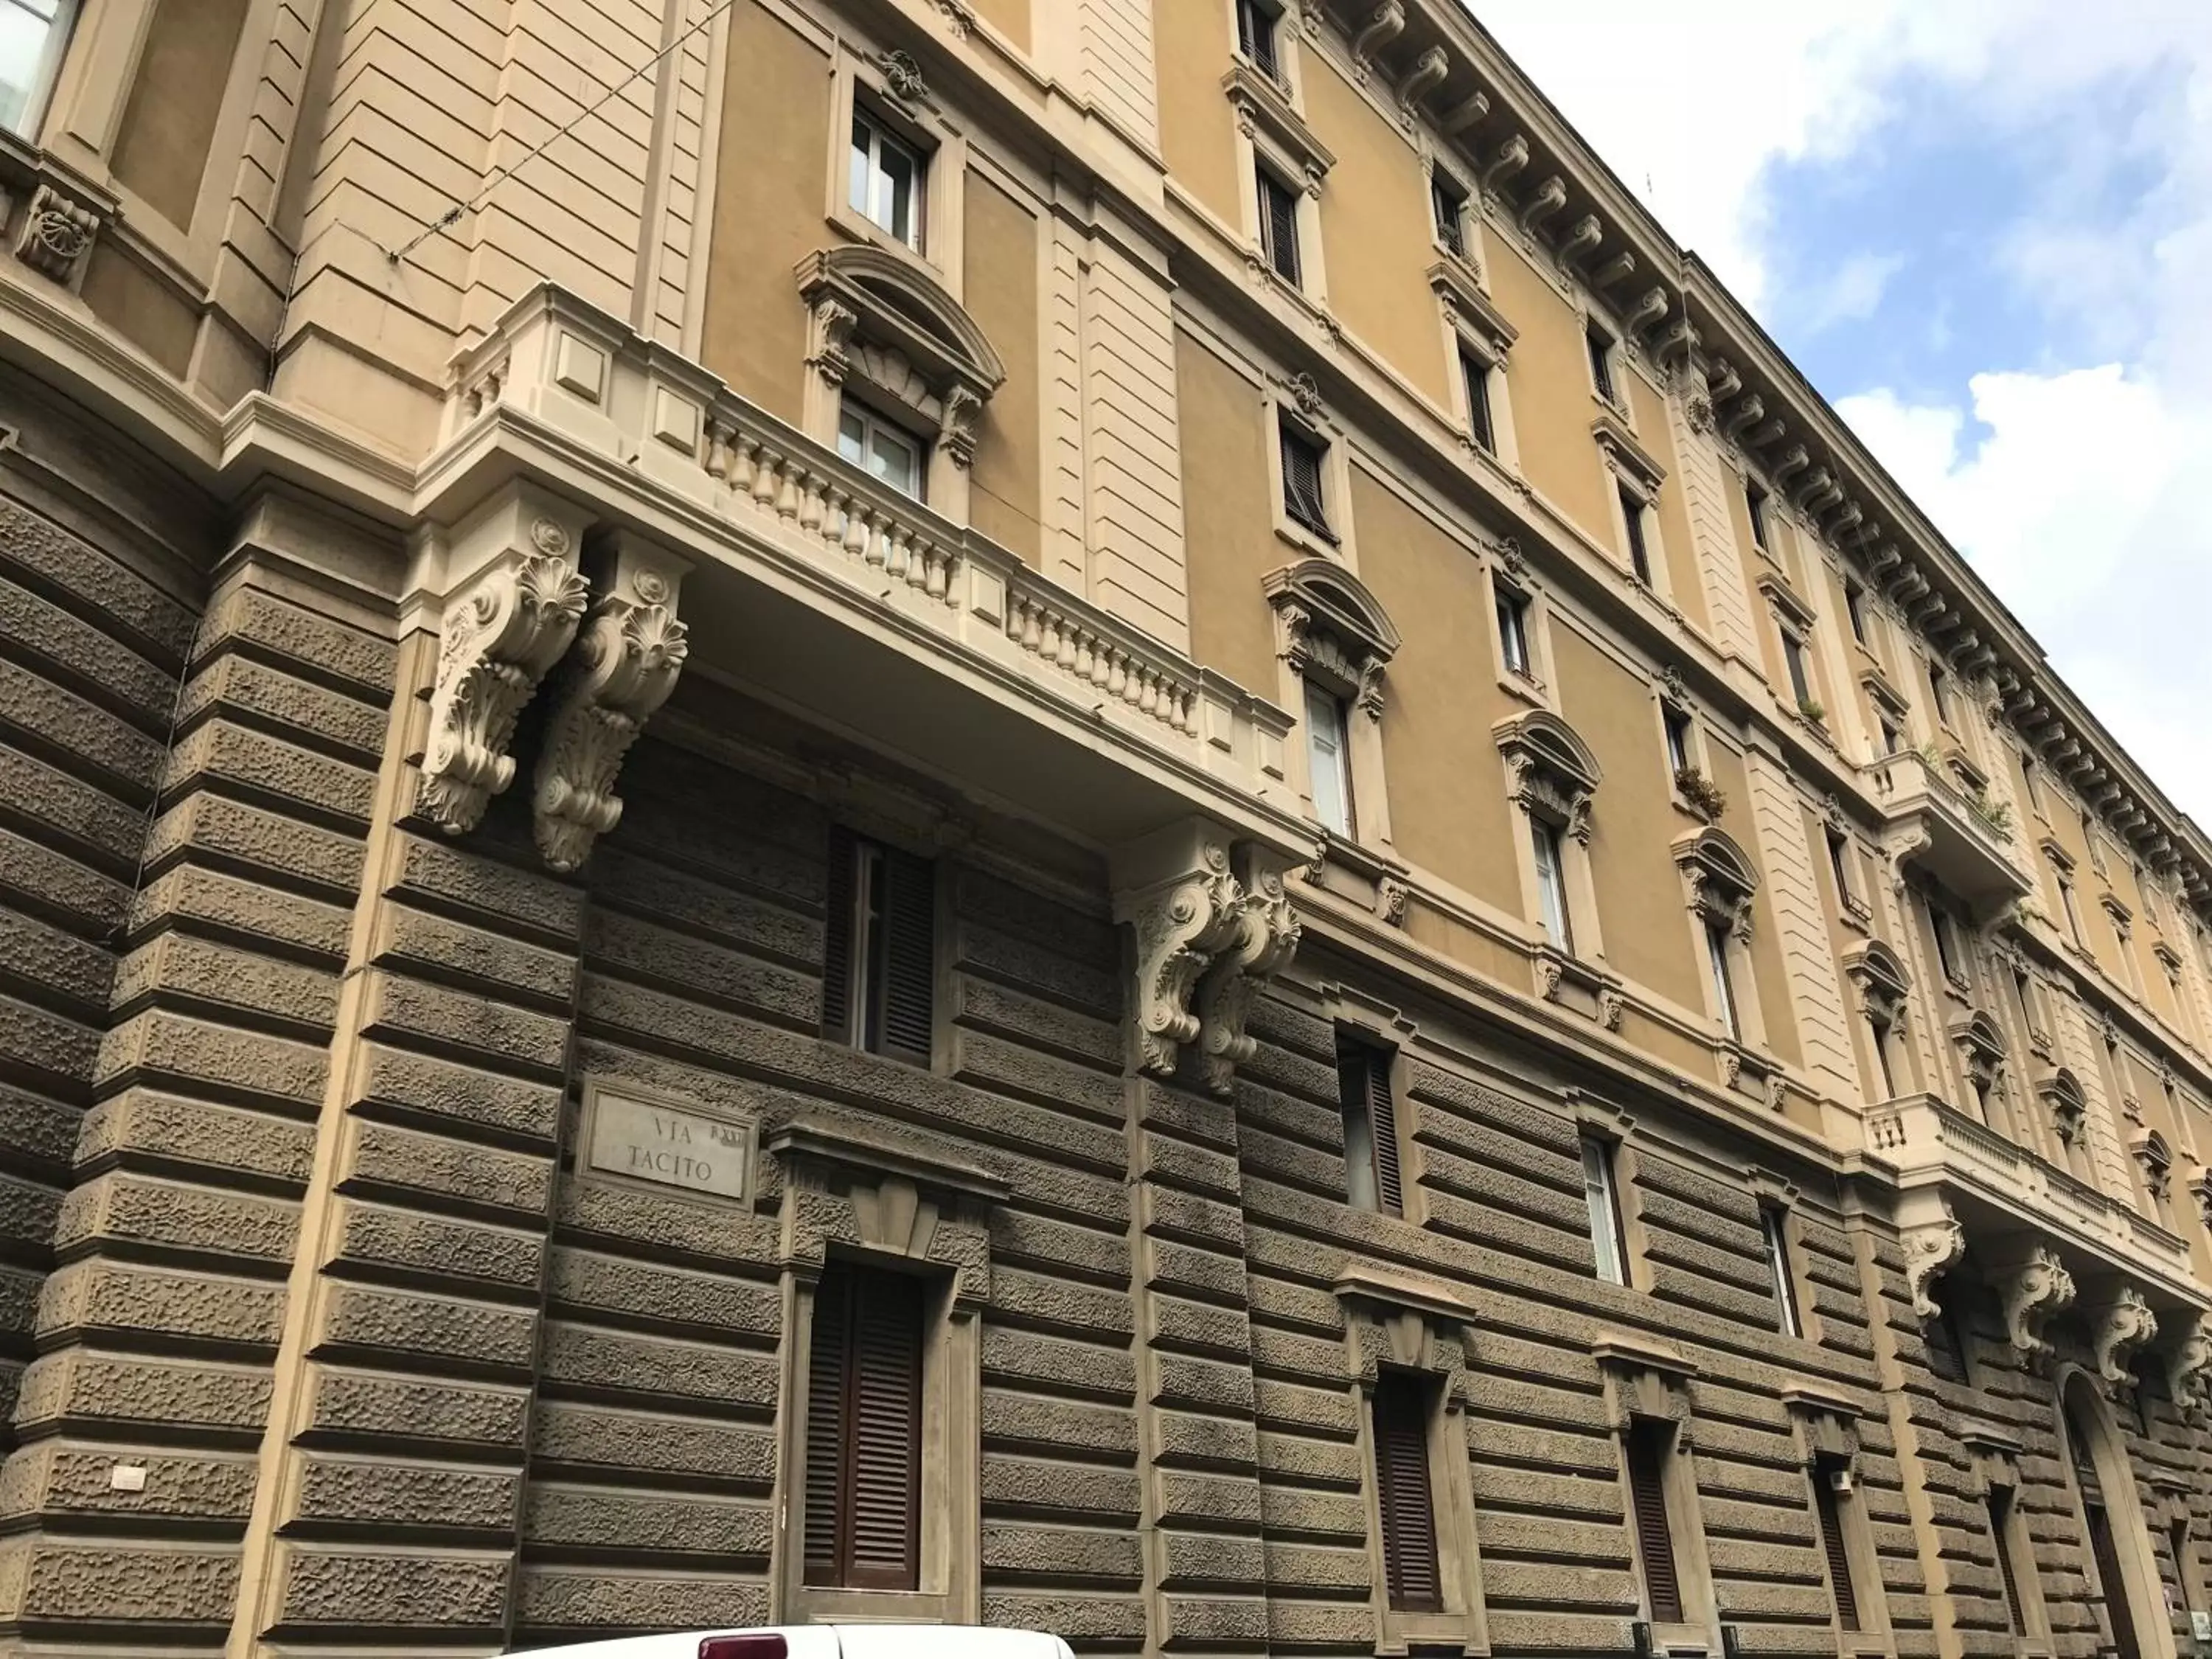 Facade/entrance, Property Building in Bellitalia Vacanze